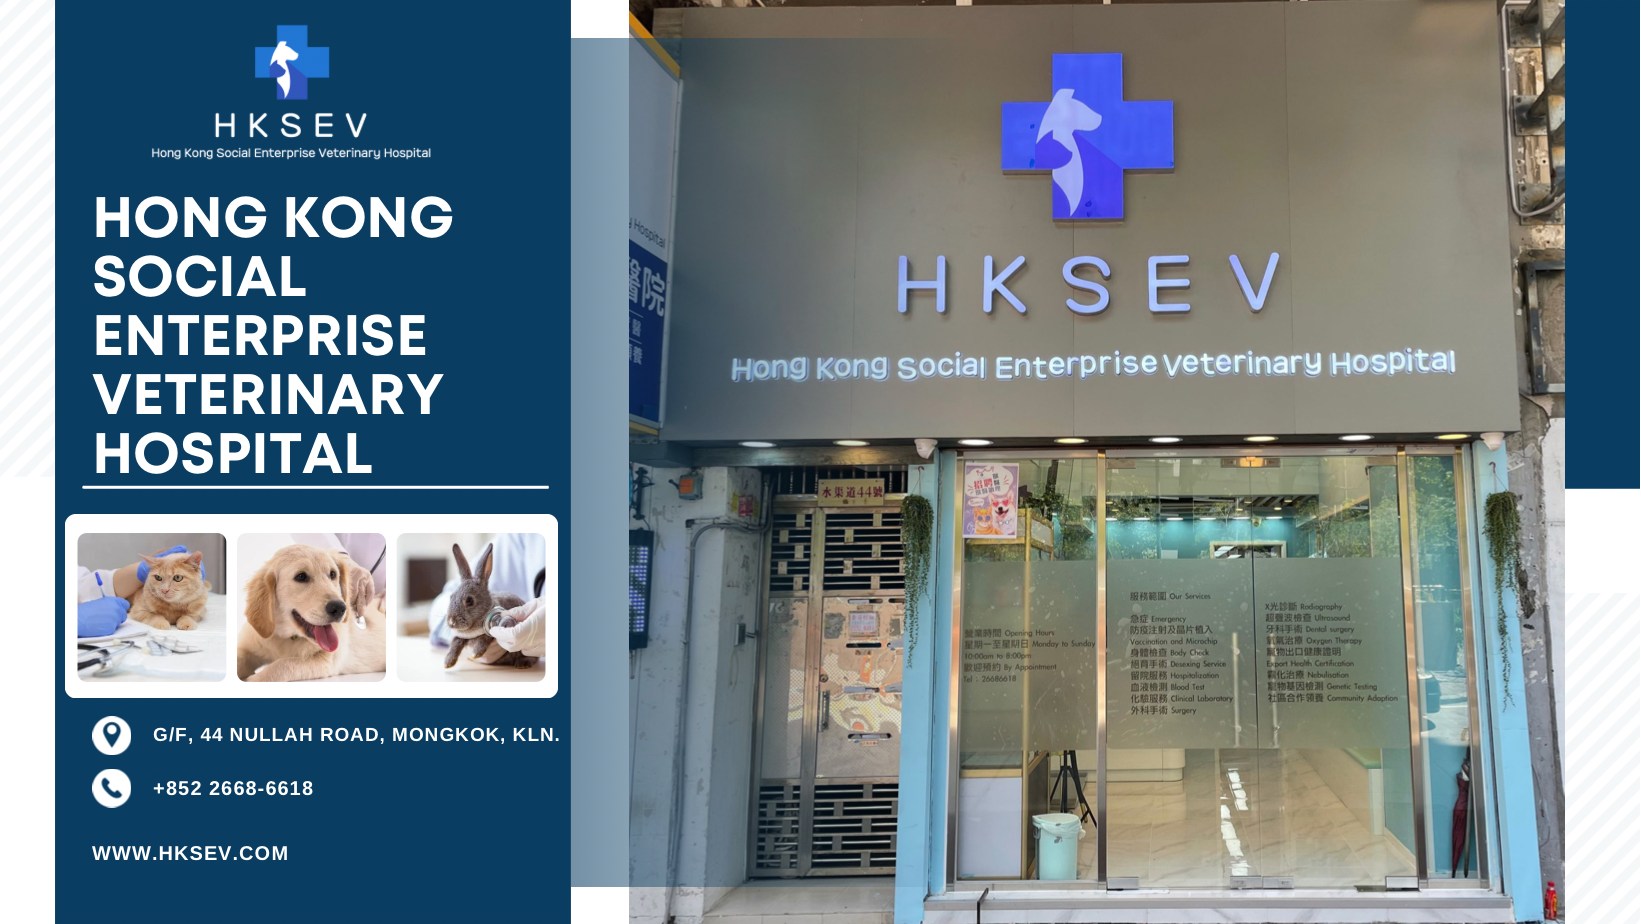 香港社企動物醫院 HKSEV Hong Kong Social Enterprise Veterinary Hospital